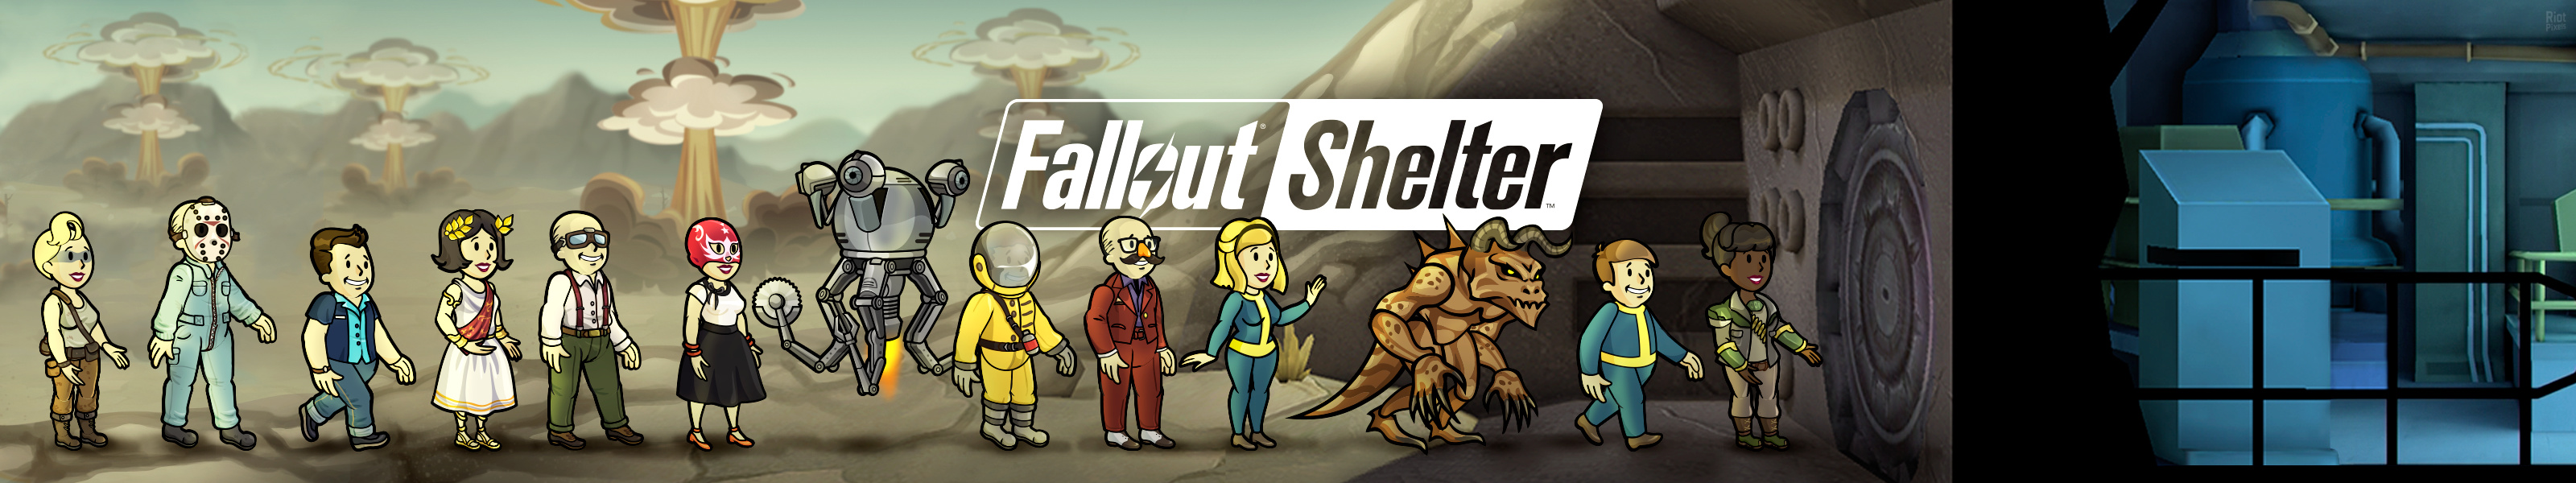 Fallout 4 мы fallout shelter на фото 52